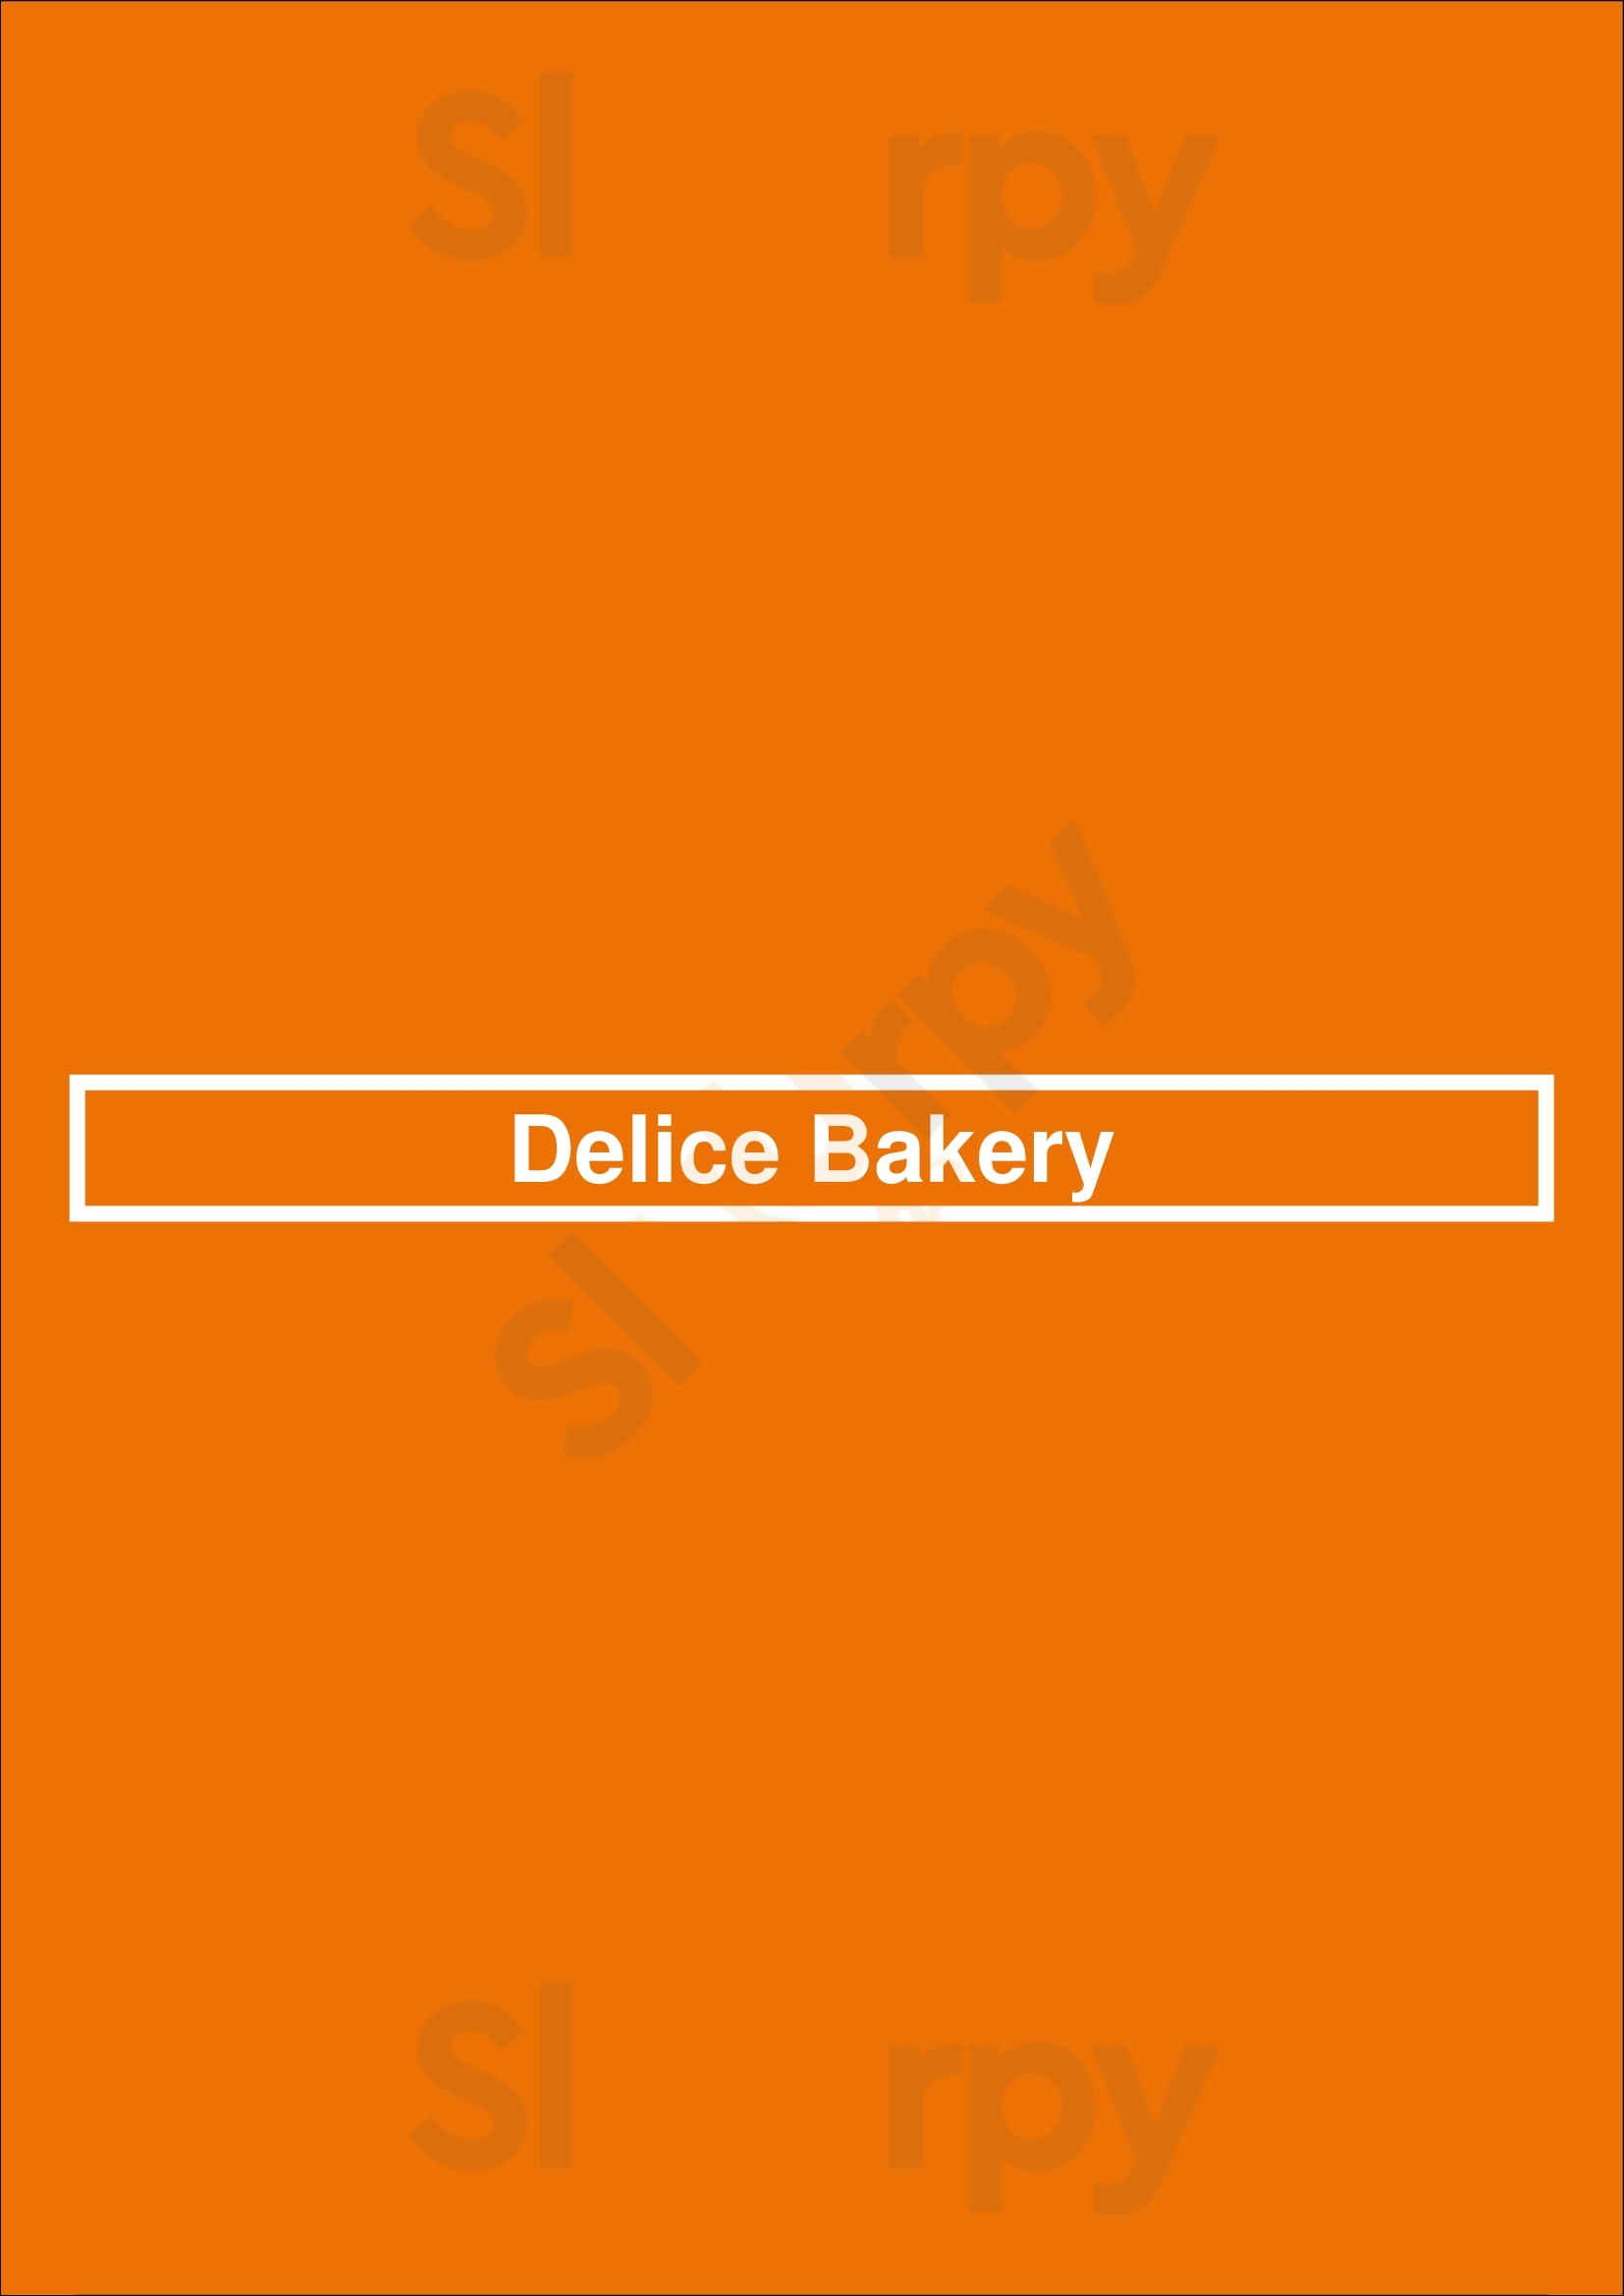 Delice Bakery Los Angeles Menu - 1